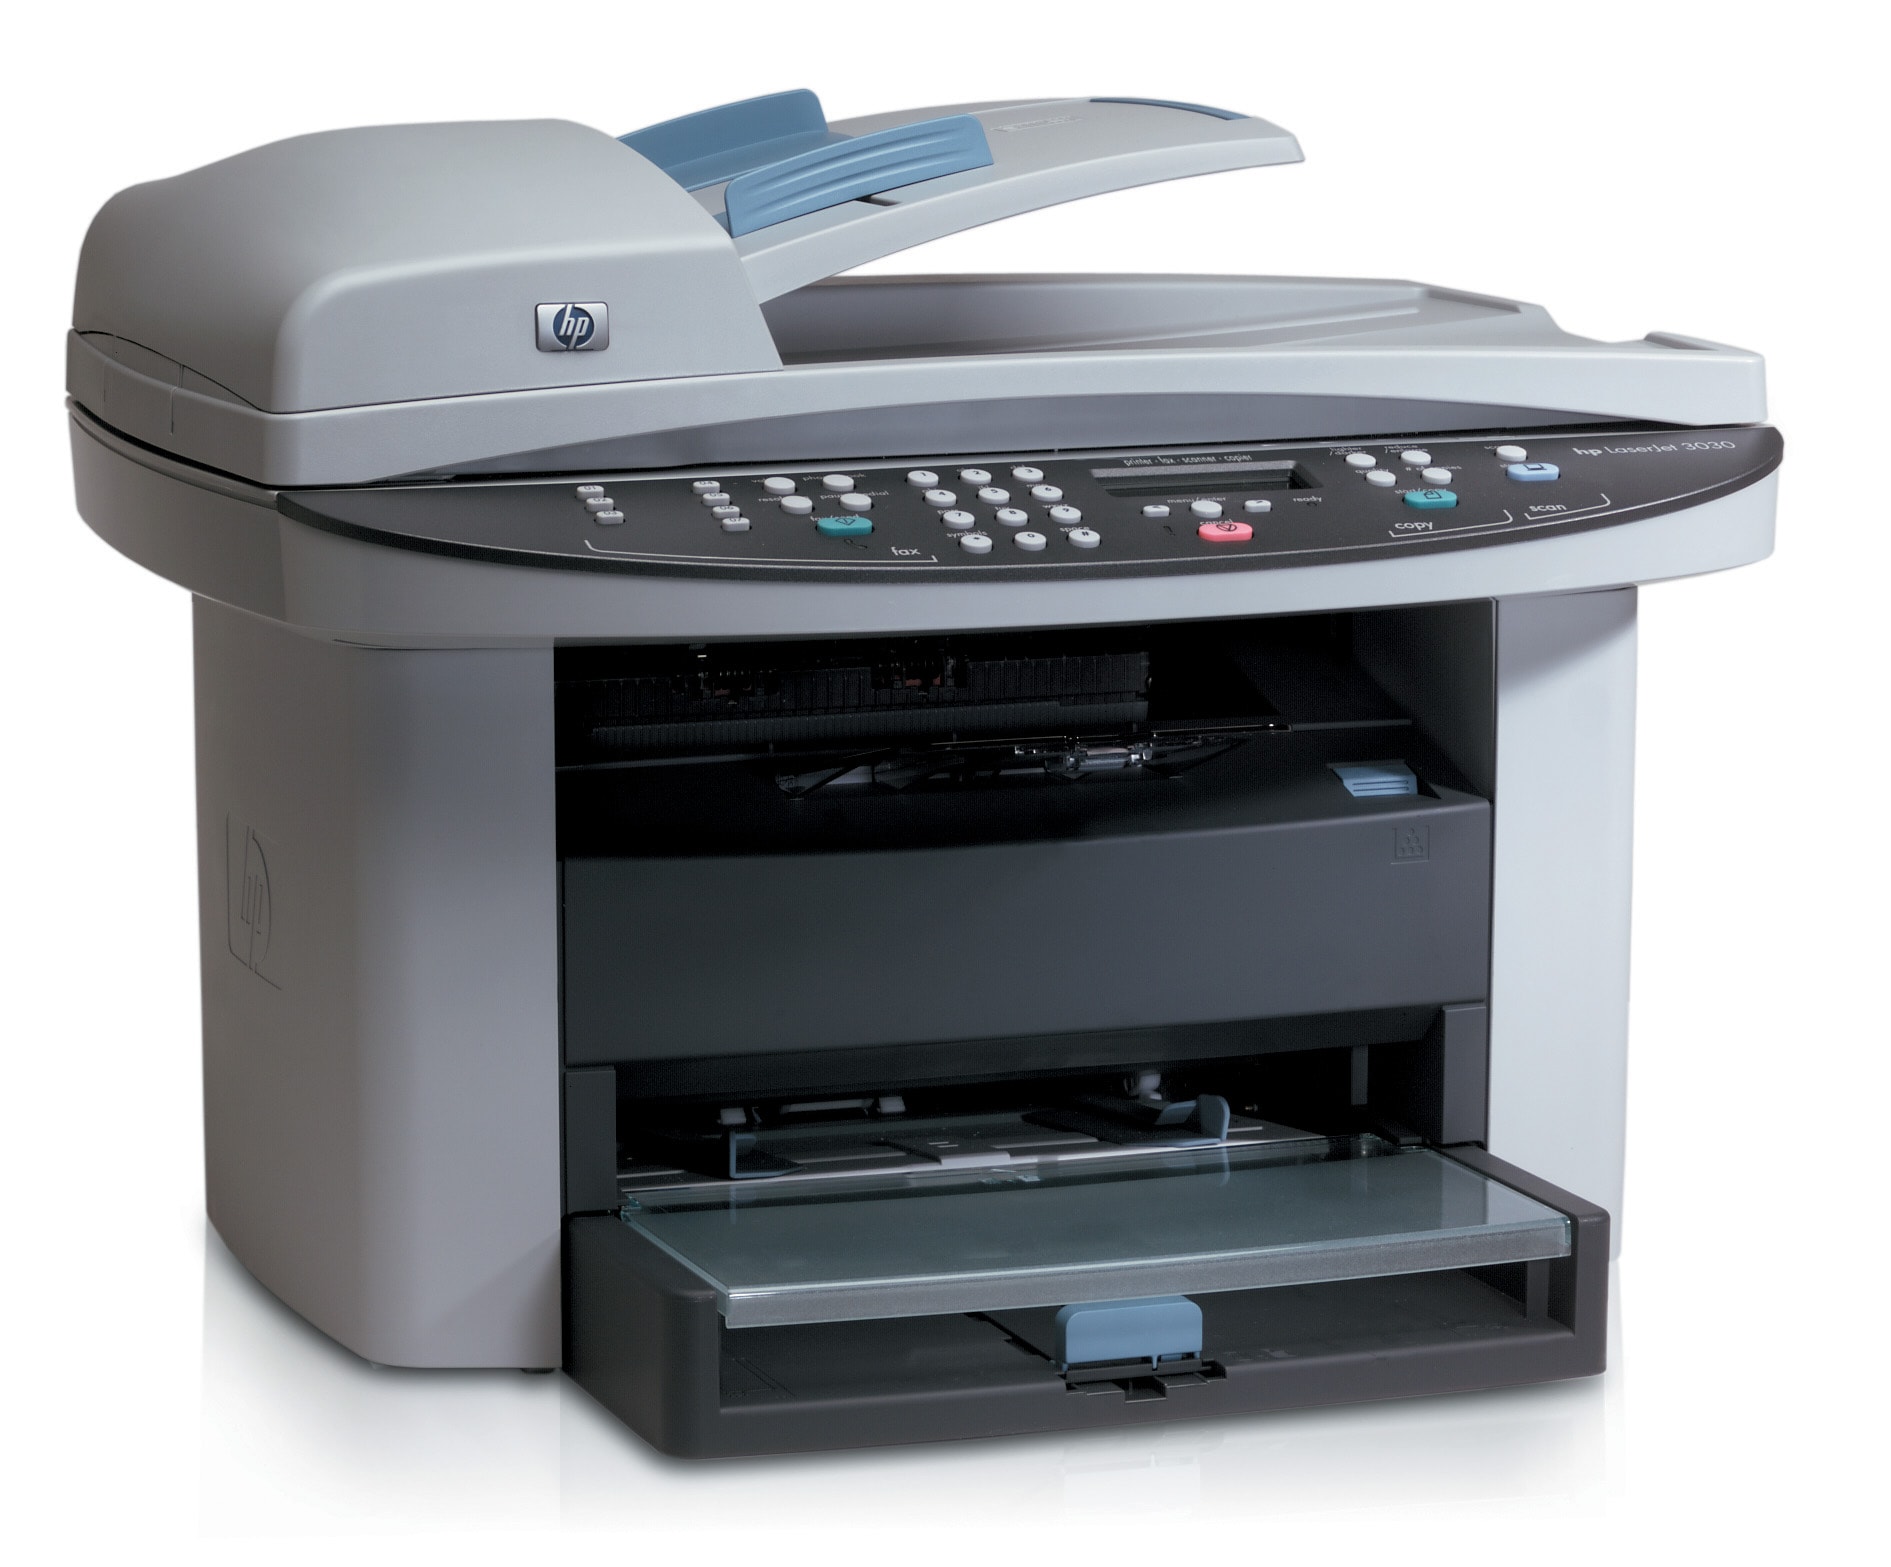 多功能一体机 惠普laserjet 3030 all-in-one printer/fax/scanner